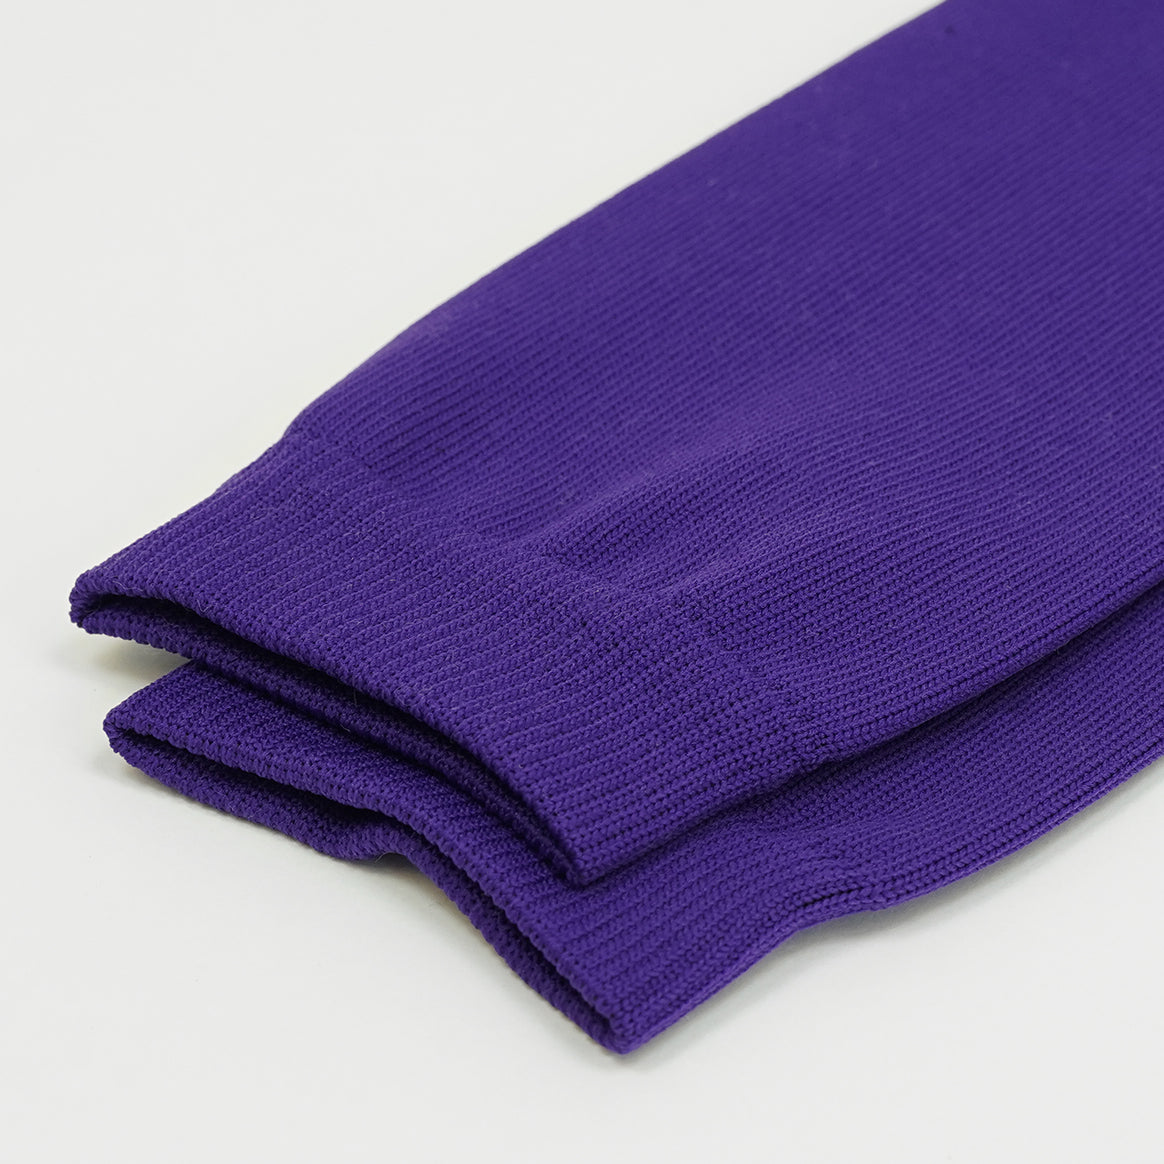 Hue Purple Kids Scrunchie Leg Sleeves